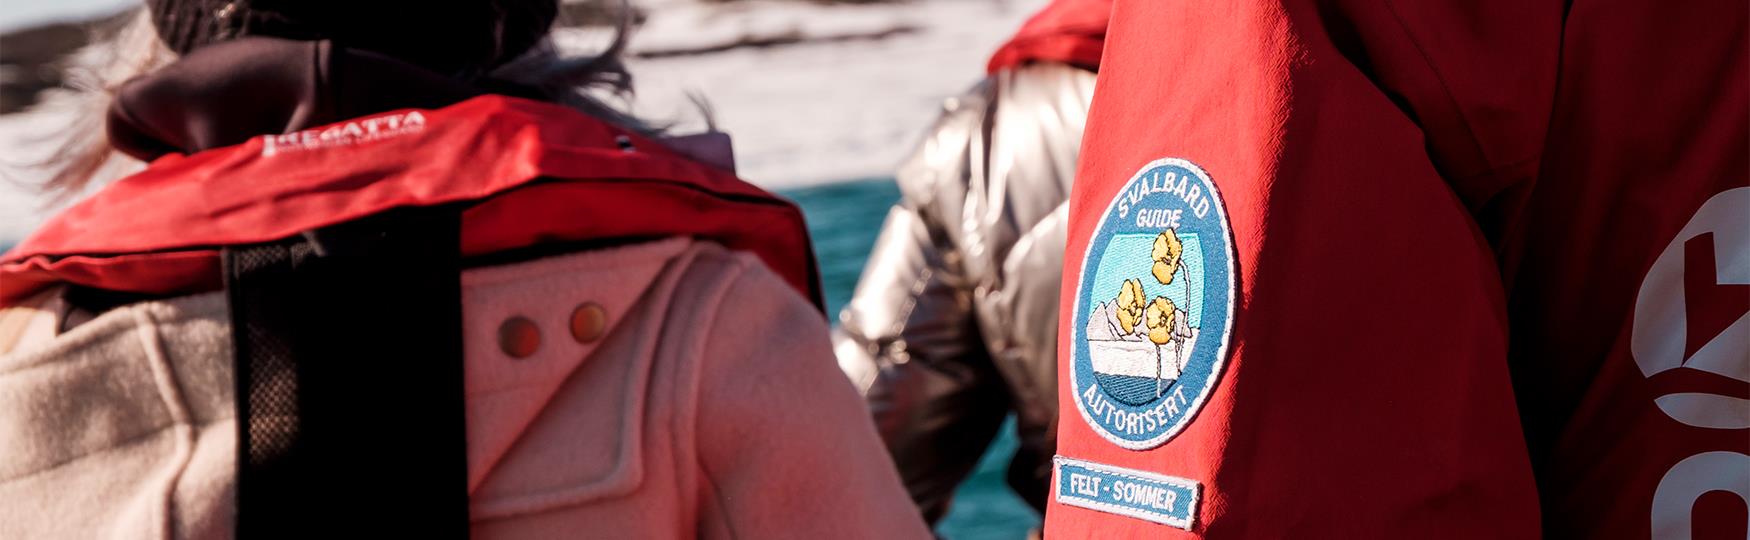 Gjester om bord en båt med en guide i forgrunnen som har et SGO-merke med autorisasjon som sommerguide på jakken sin.